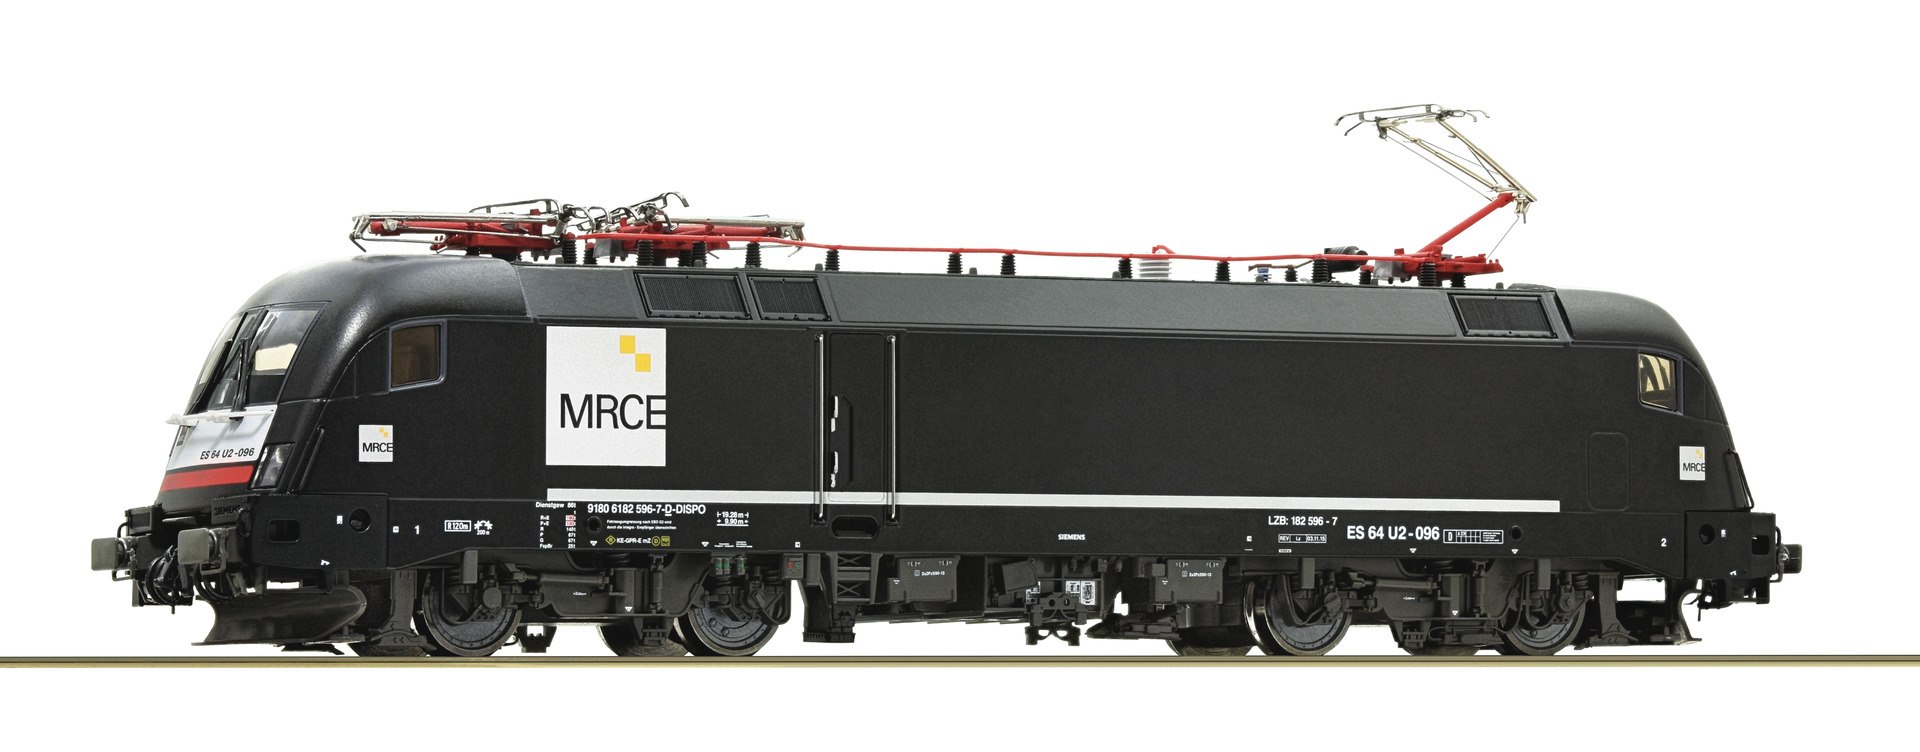 Roco 70519 H0 MRCE elektrische locomotief BR 182, DC sound